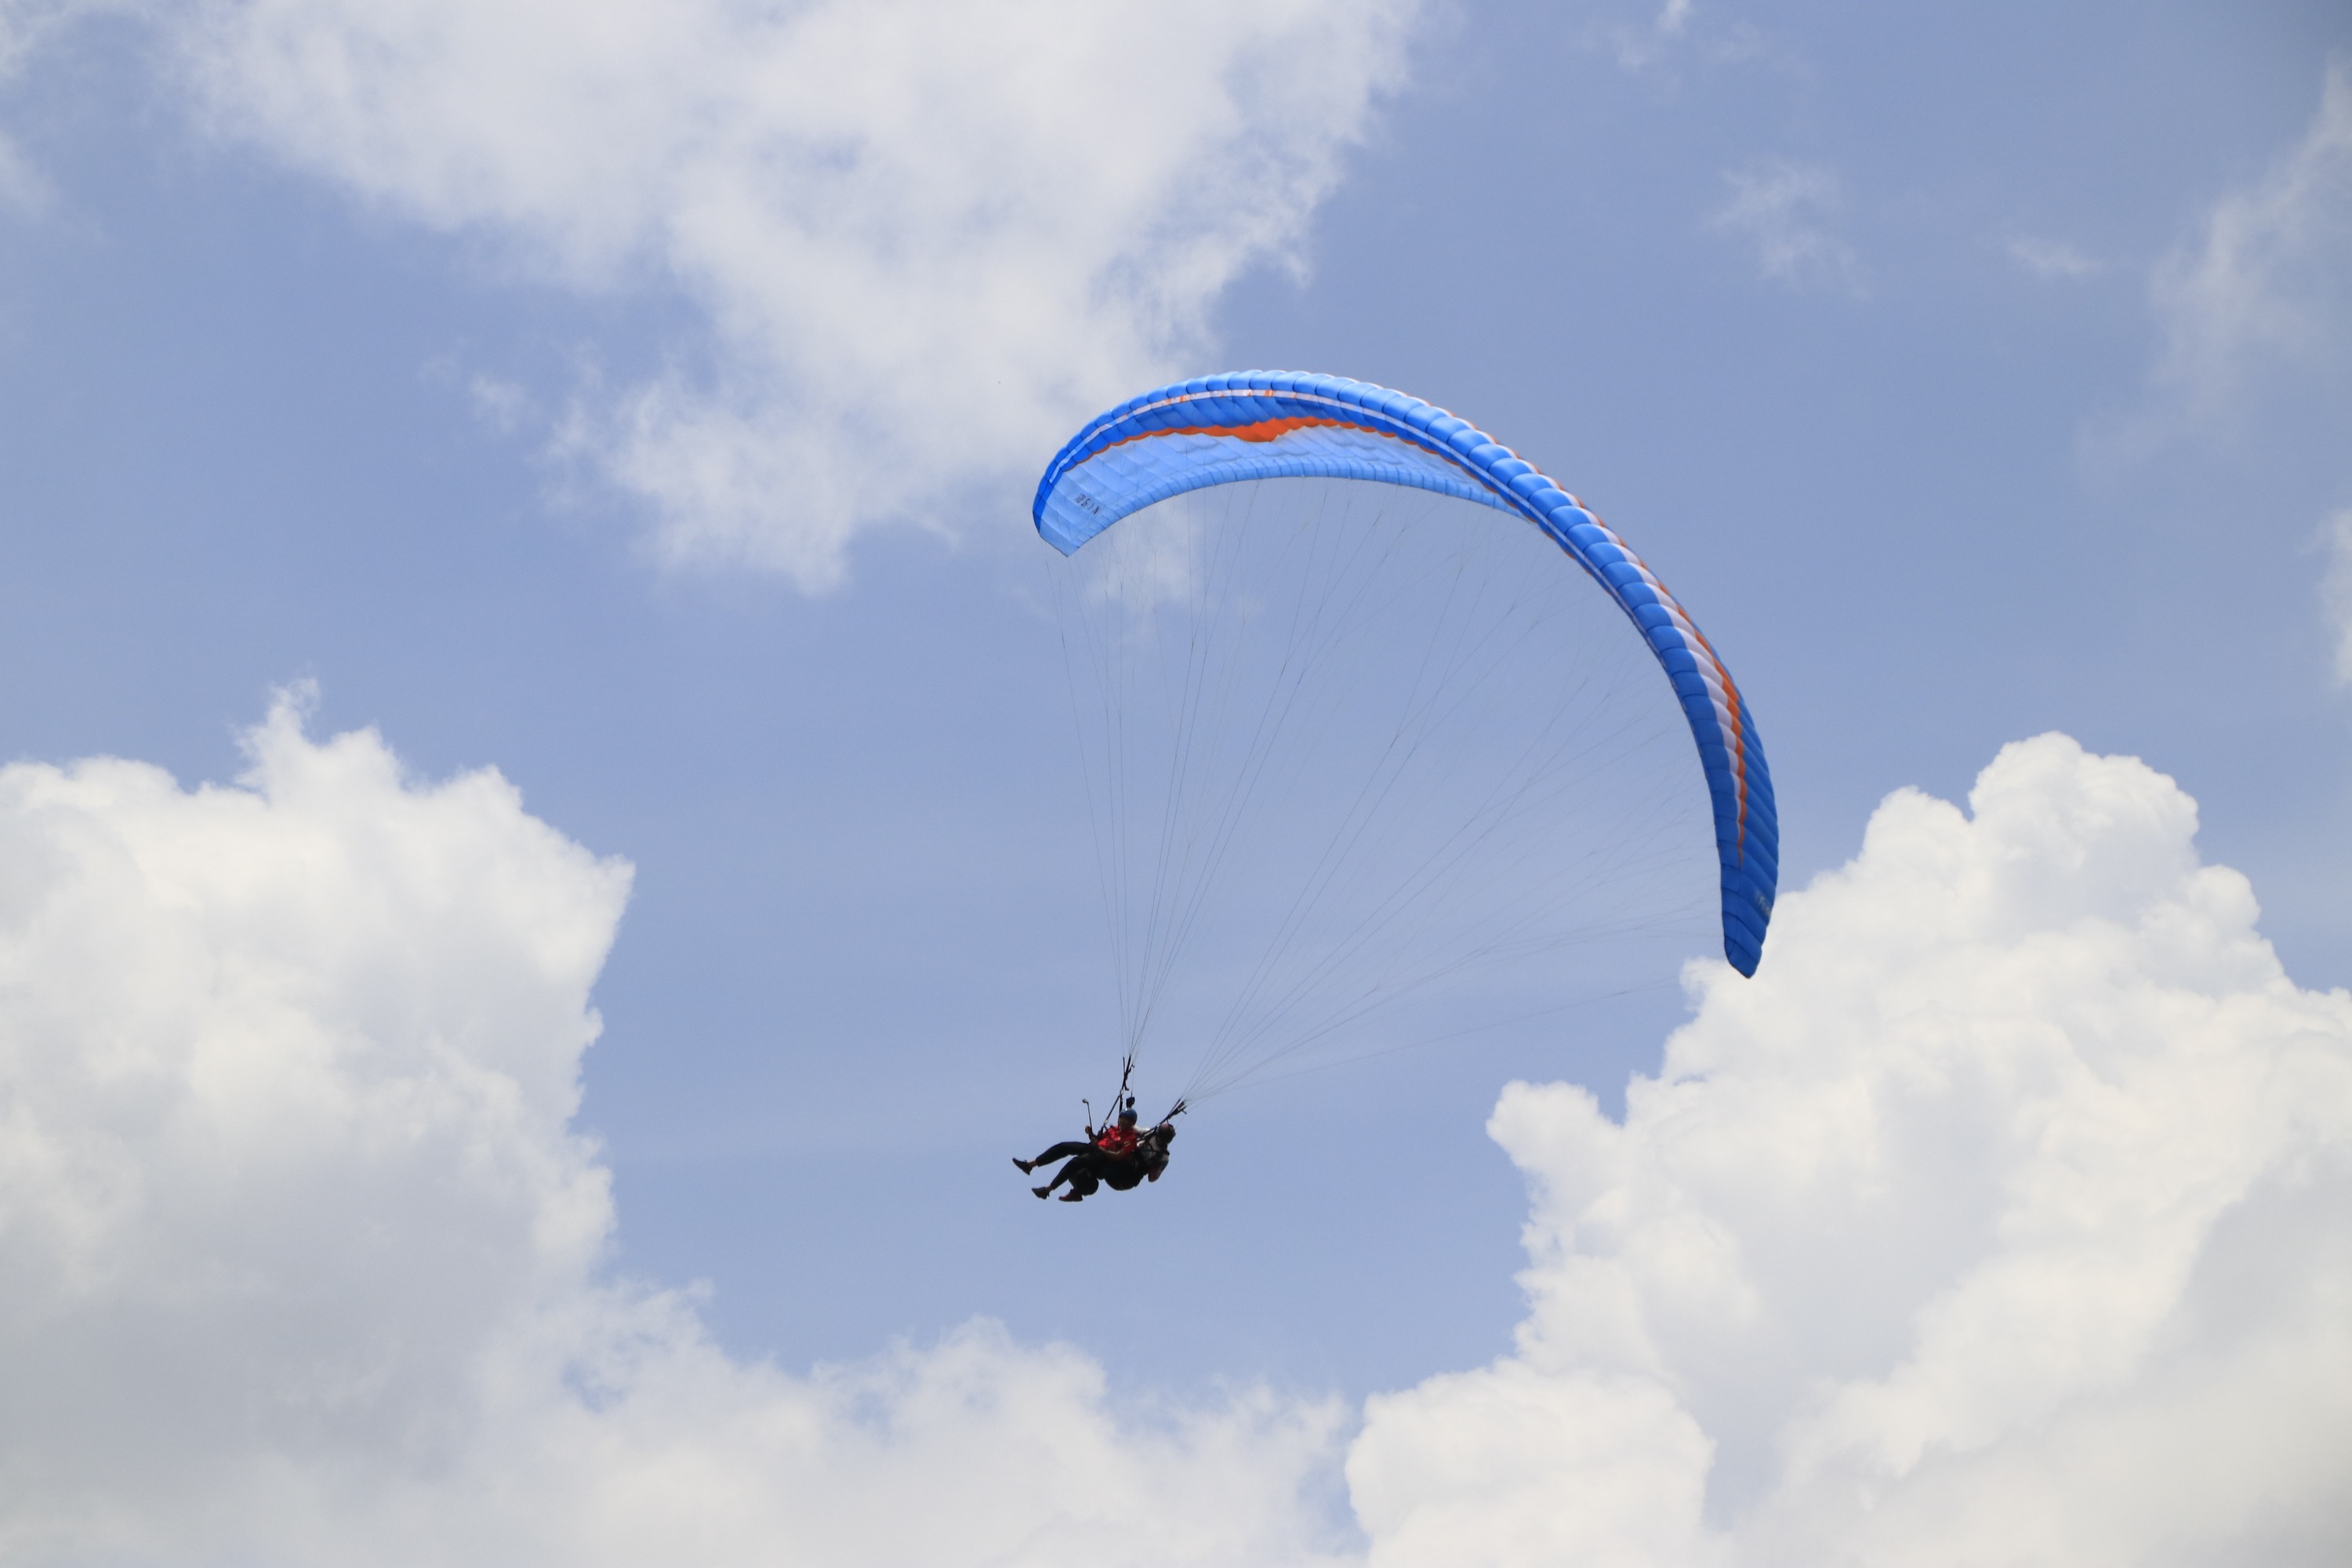 登加樓專業雙人滑翔傘體驗